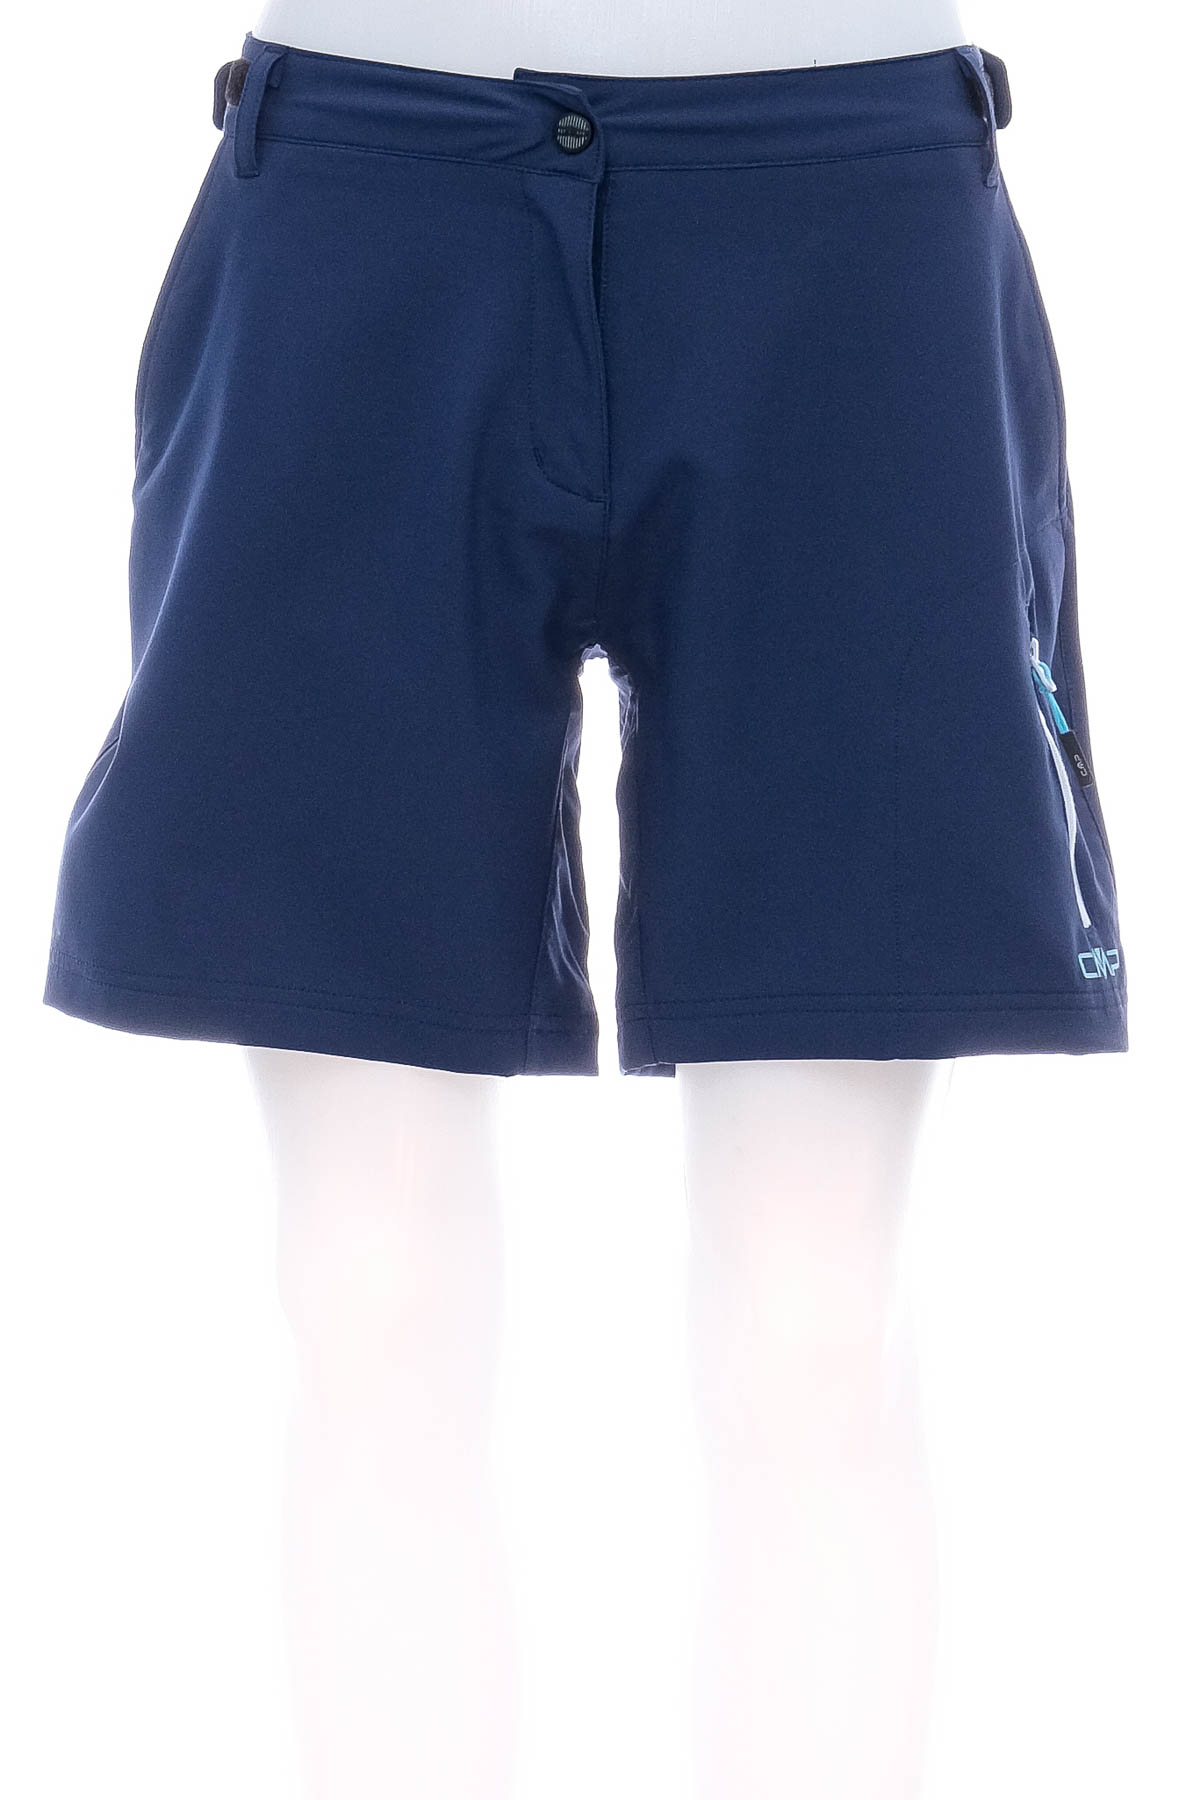 Men's shorts - CMP - 0